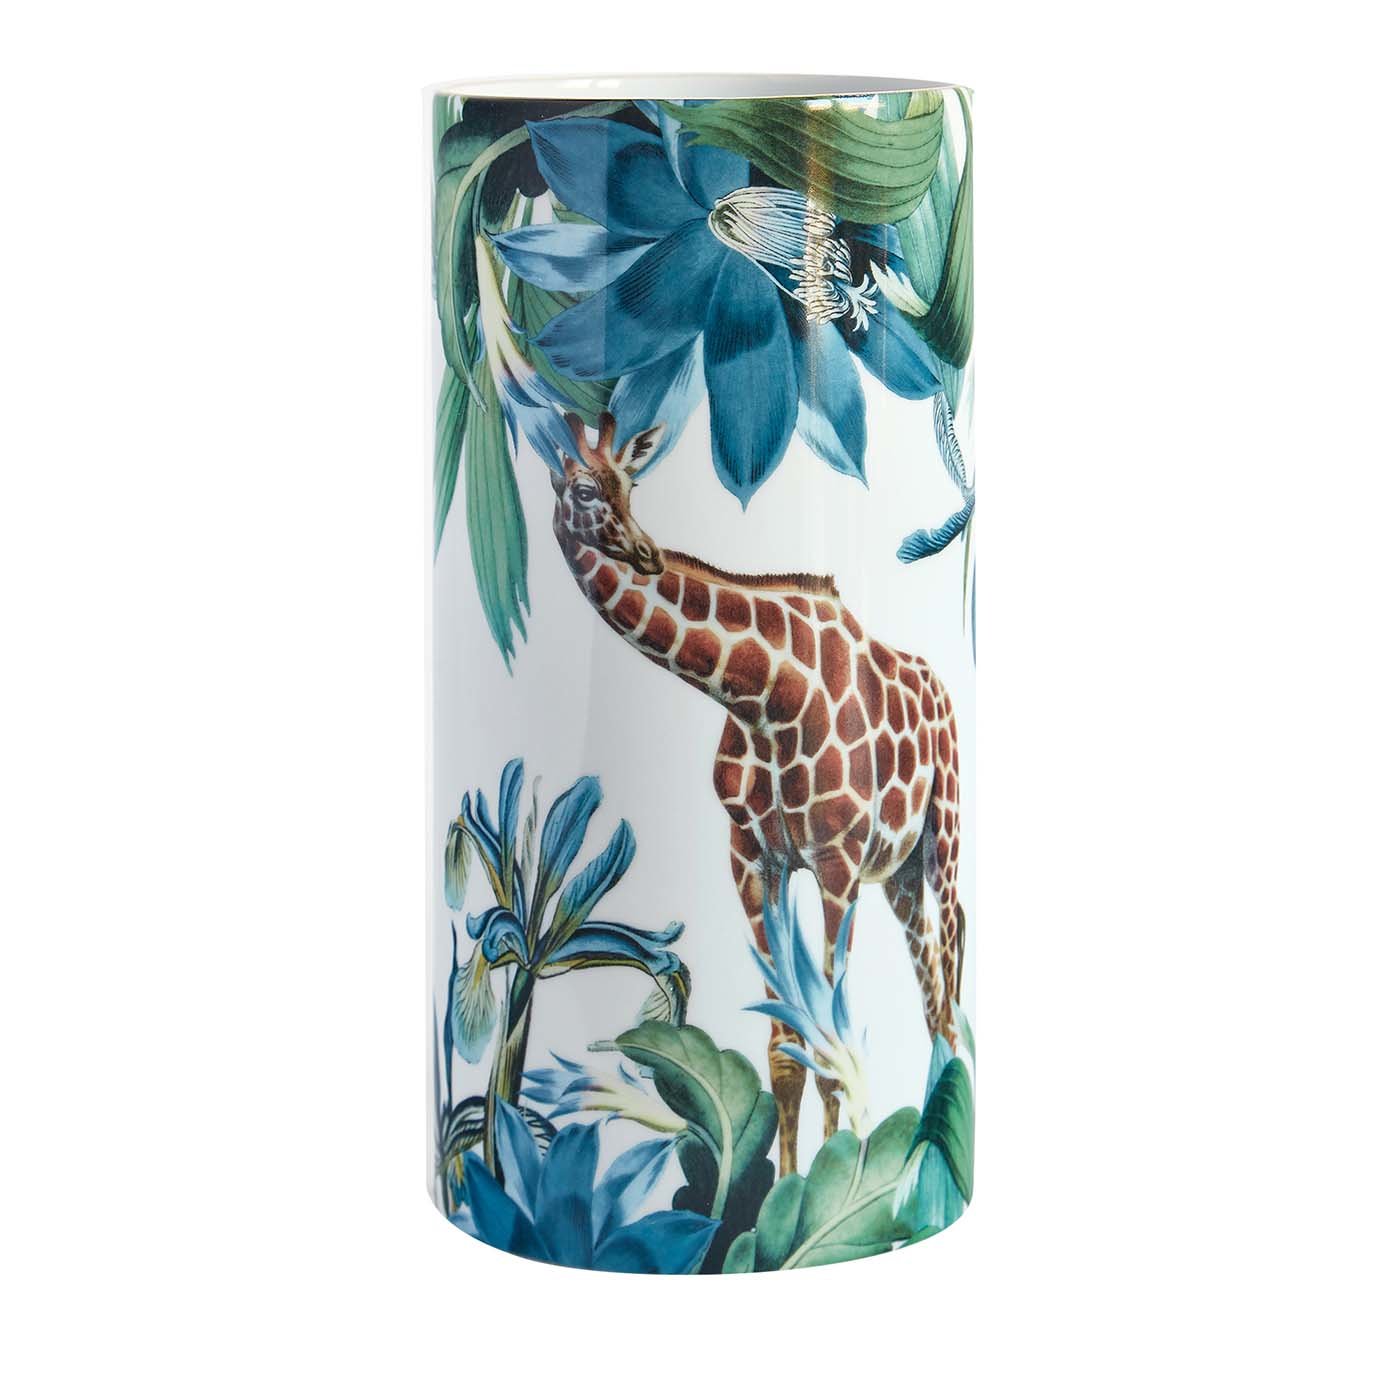 Animalia Porzellan Zylindrische Vase mit Giraffe - Hauptansicht